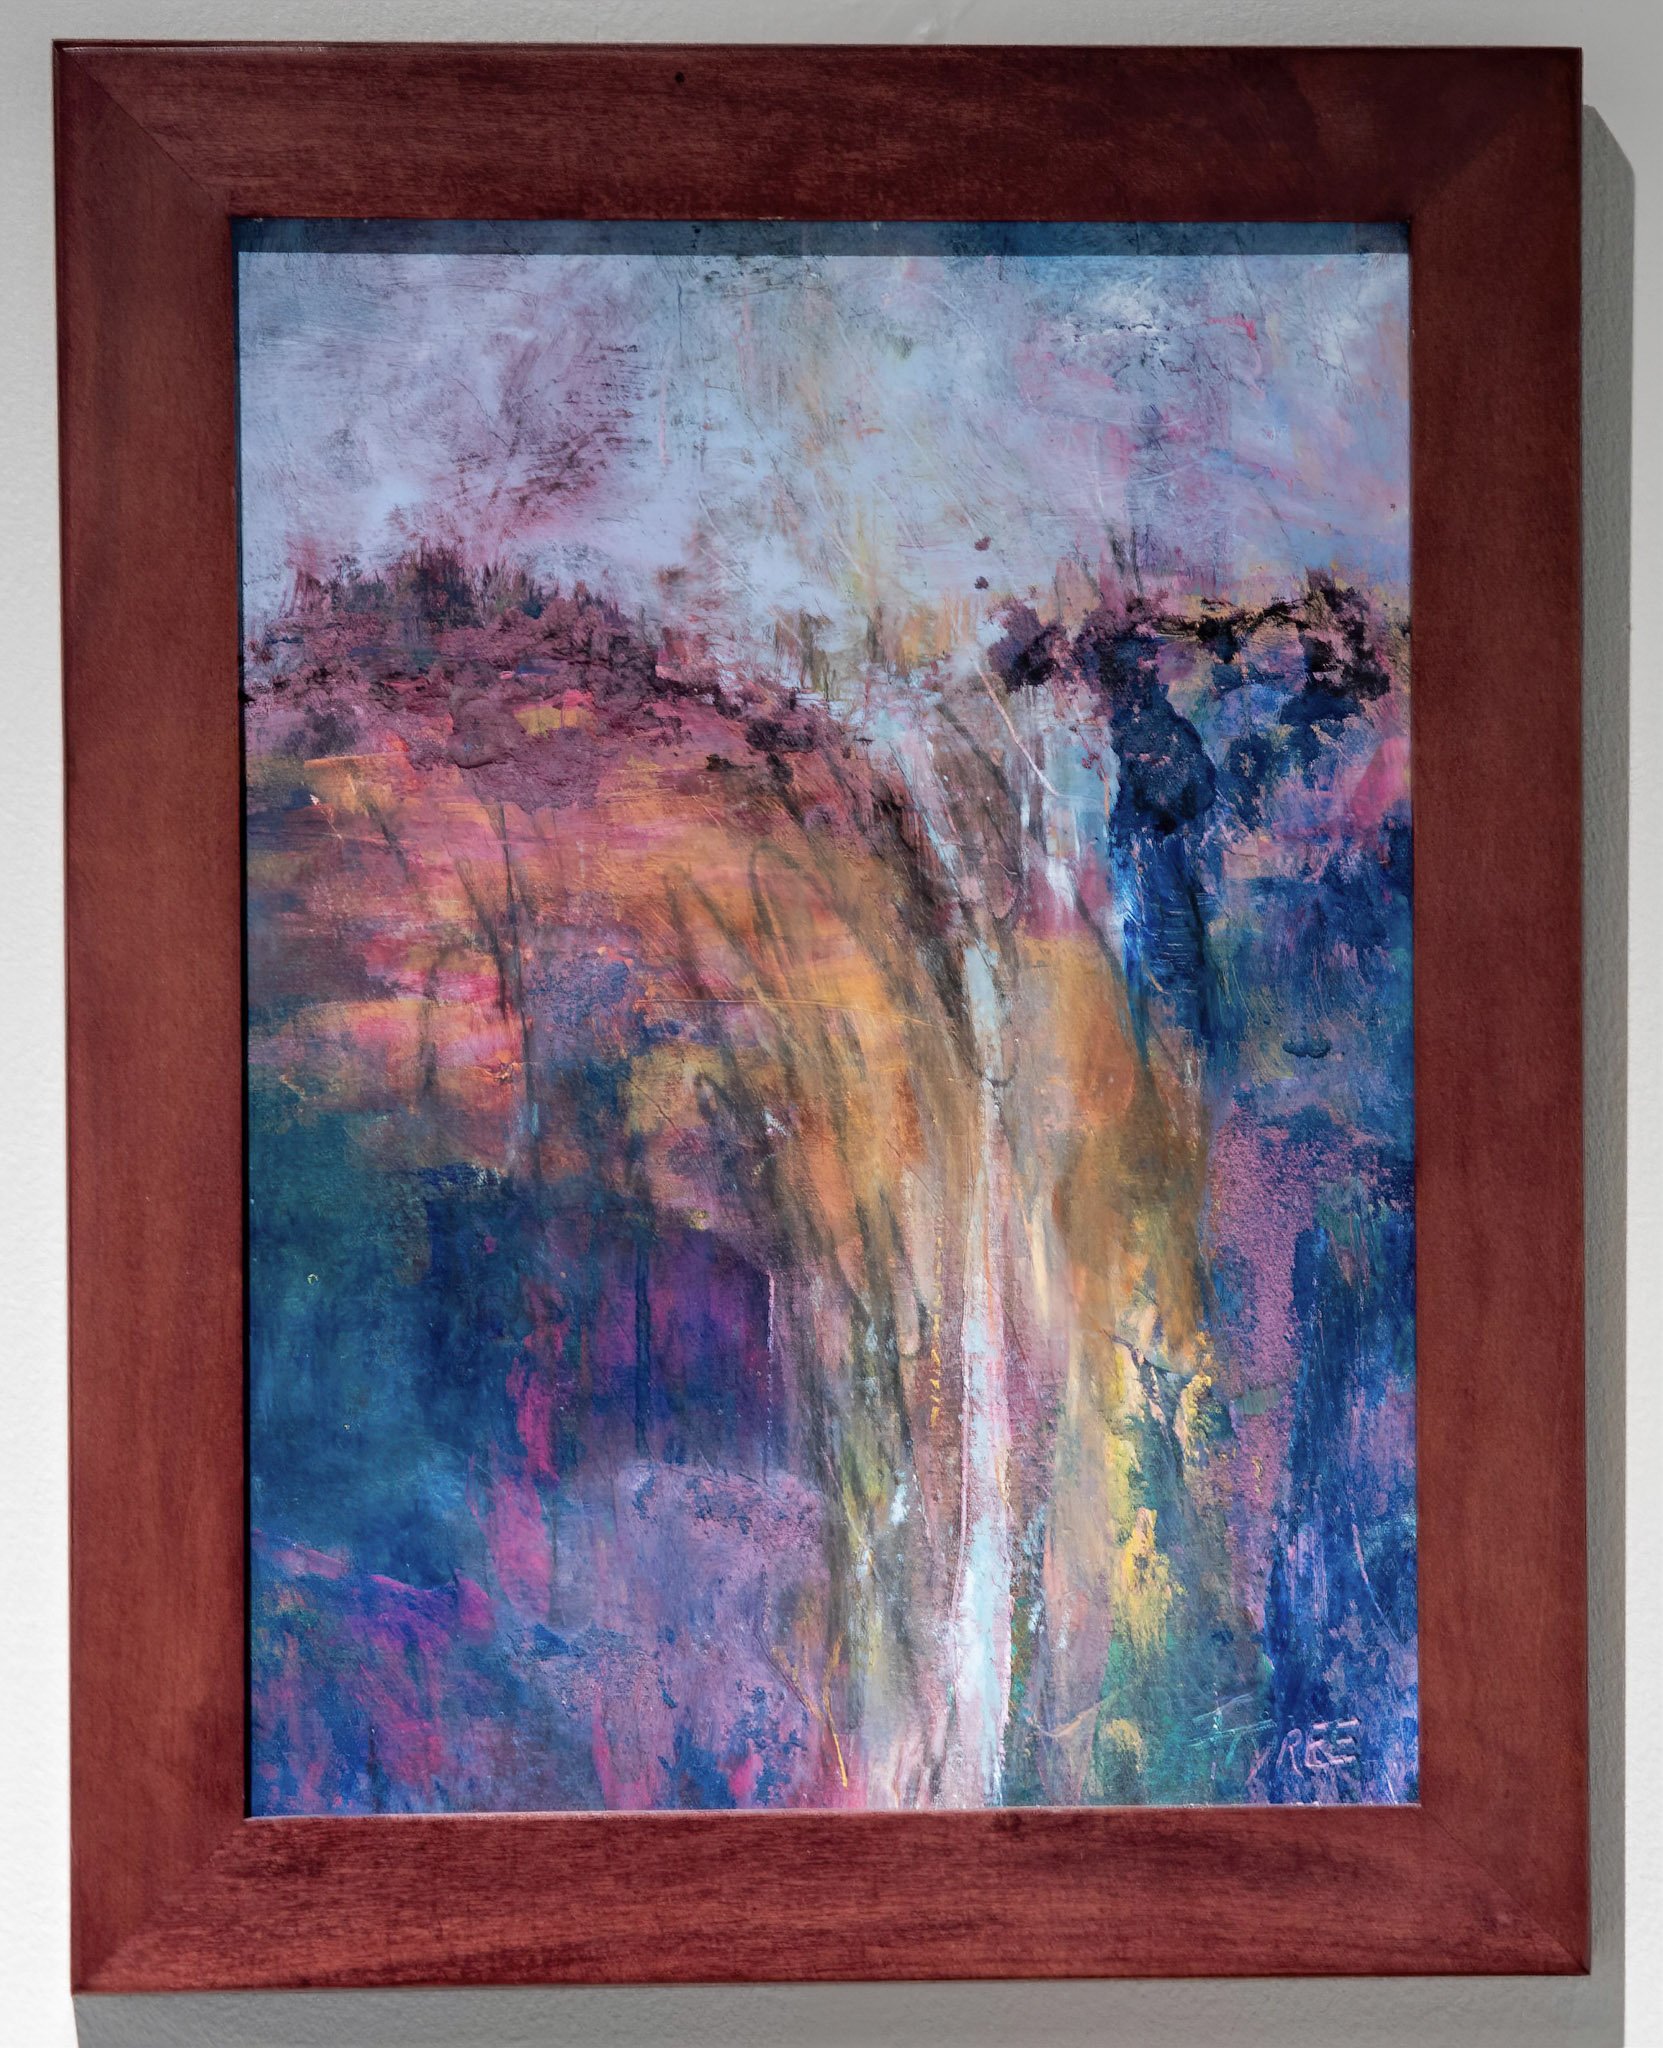 Toni Tyree, "Waterfall," oil